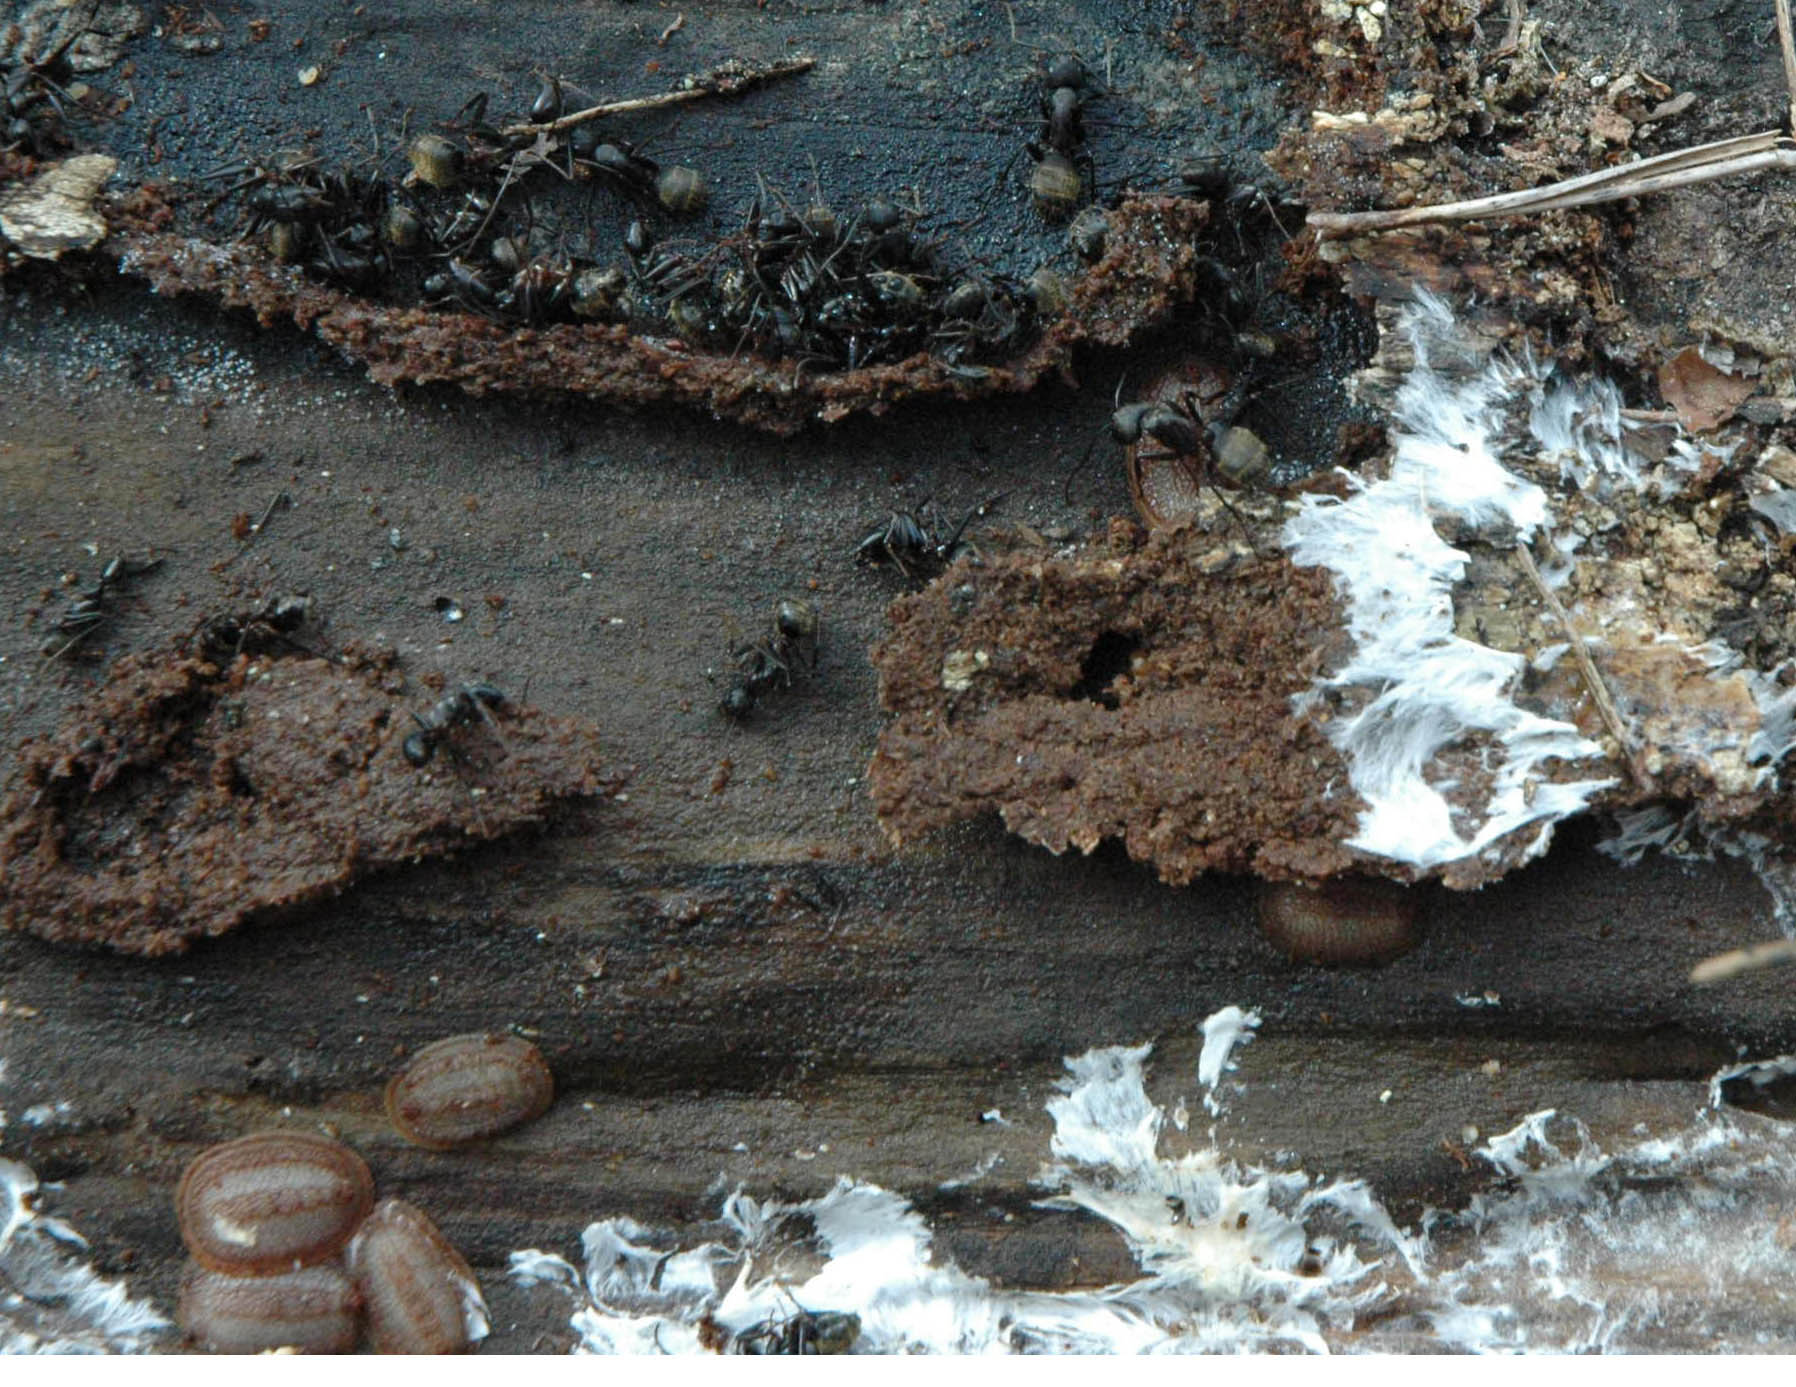 Microdon larvae and Camponotus chromaiodes